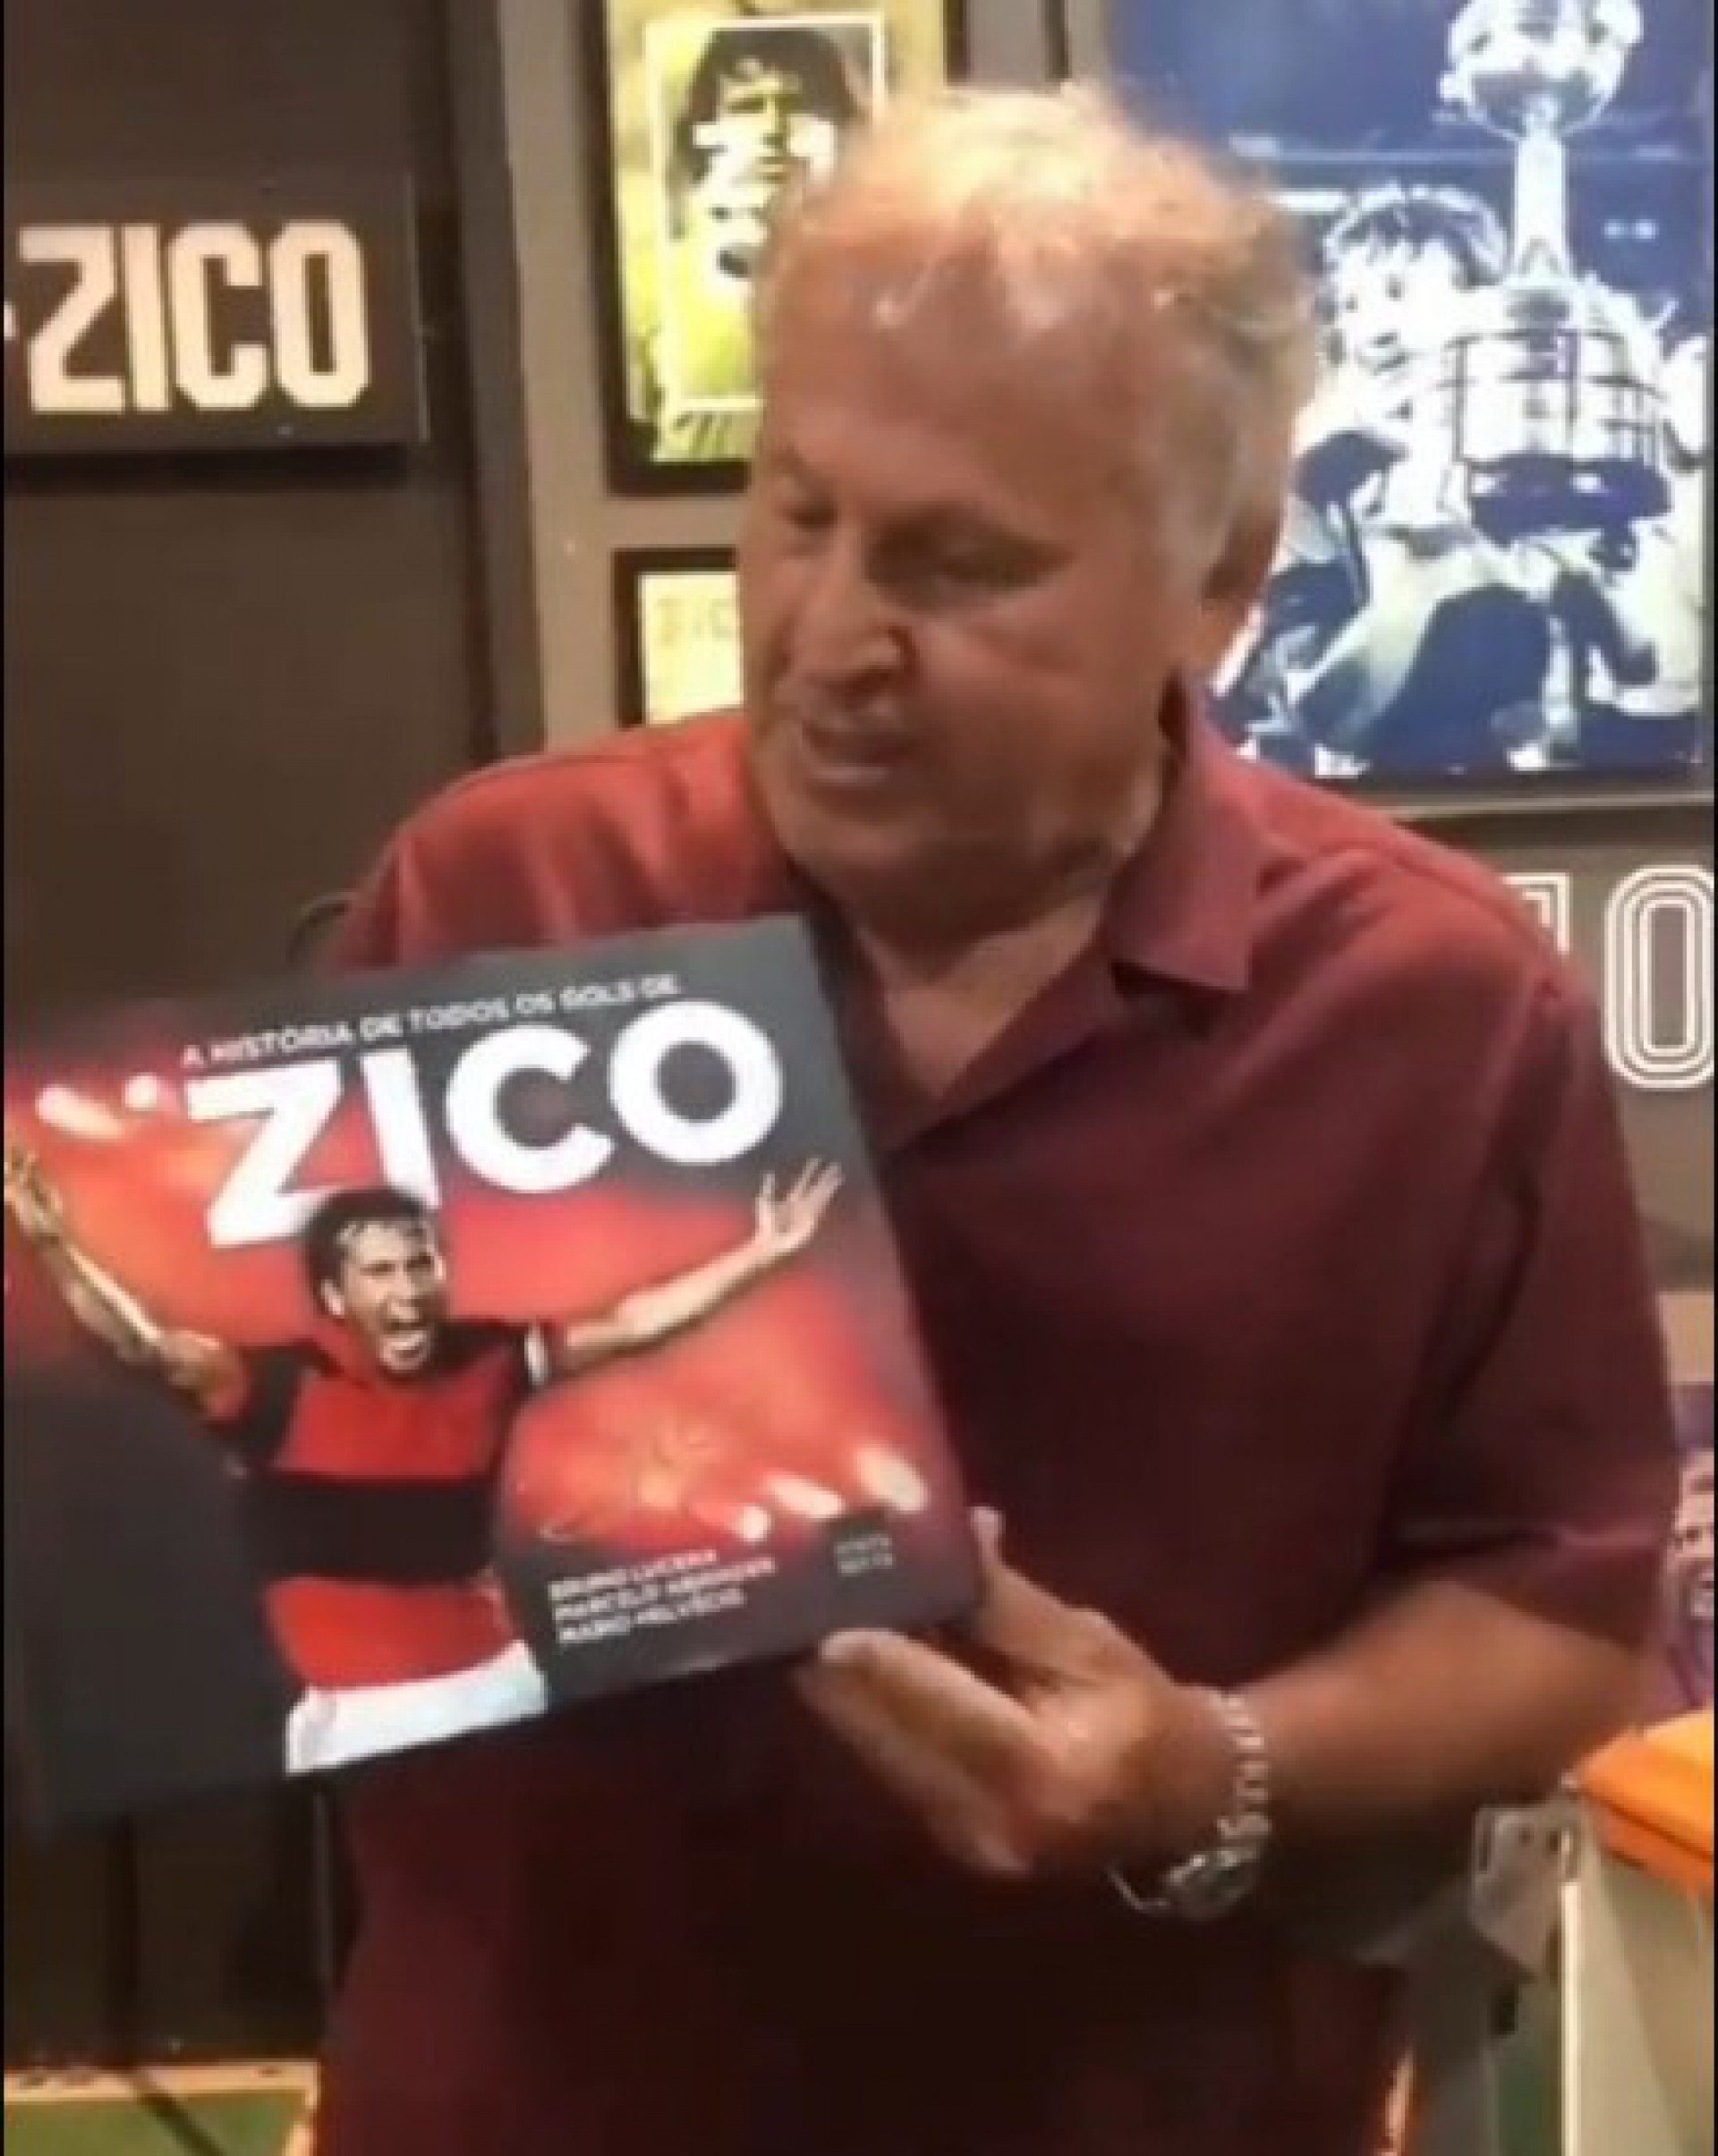 Zico com o livro que conta a história de todos os gols de sua carreira - Reprodução/Twitter Jr Coimbra